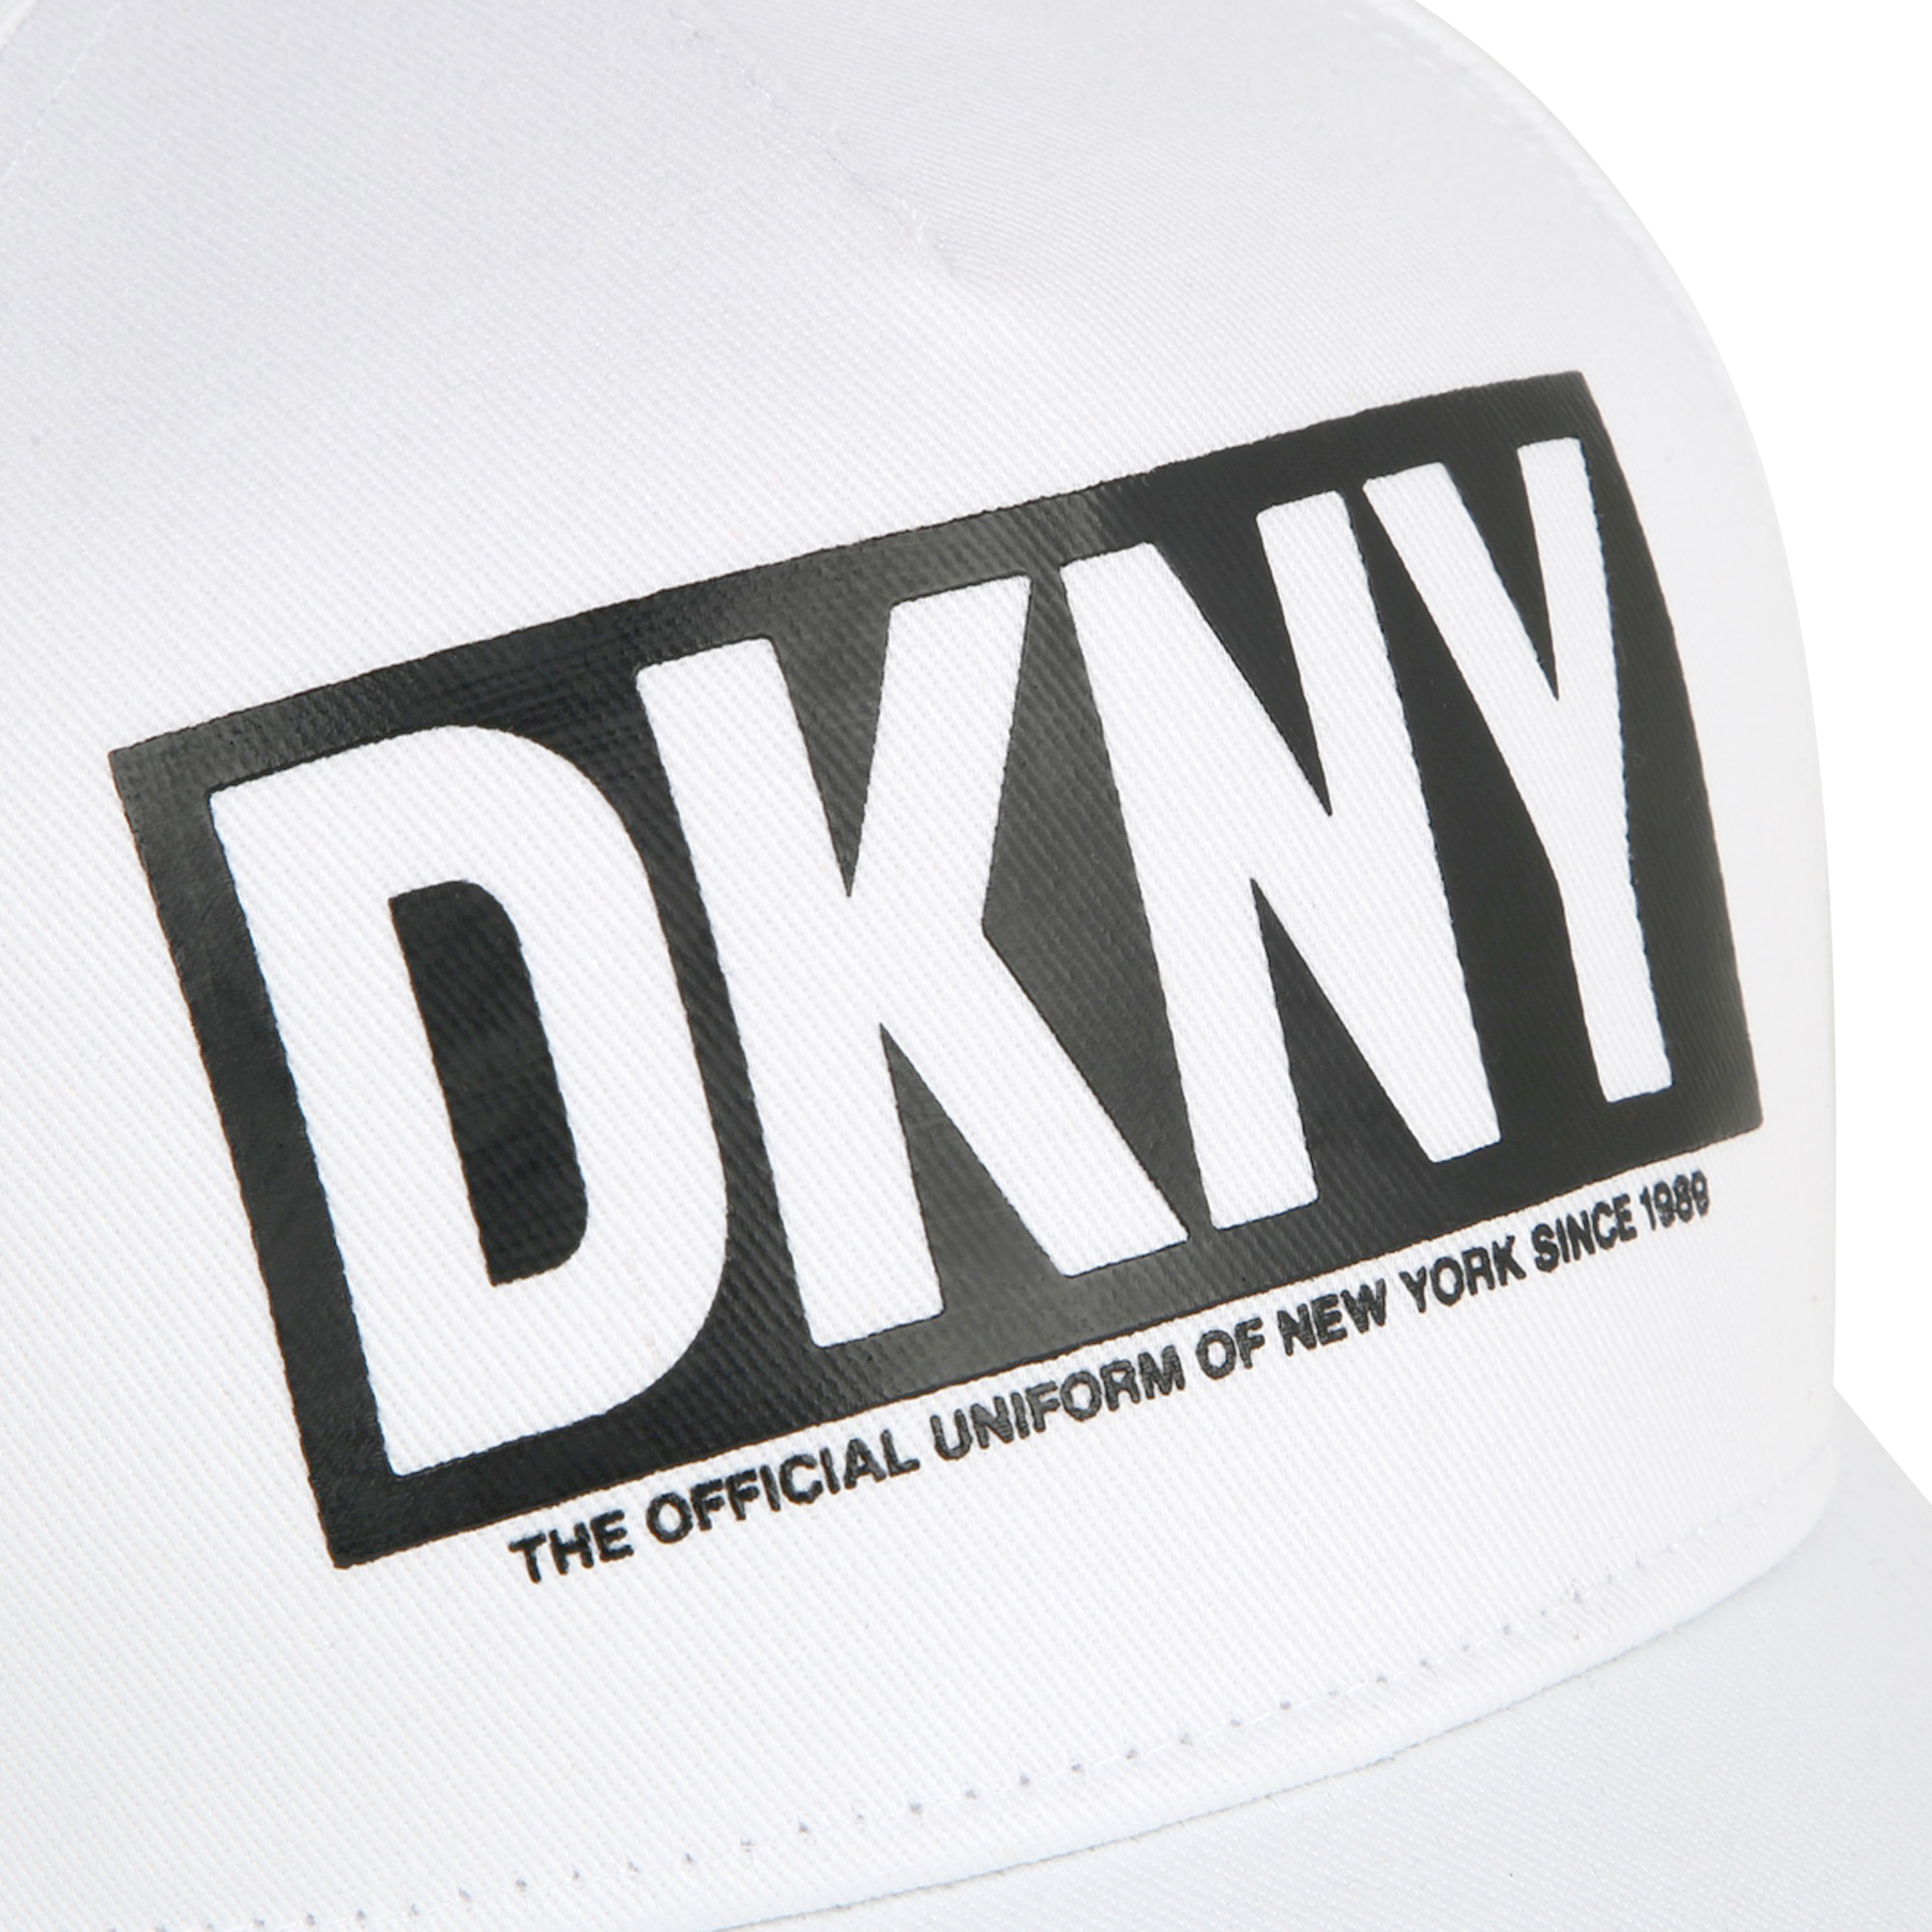 Cappellino logato con velcro DKNY Per UNISEX